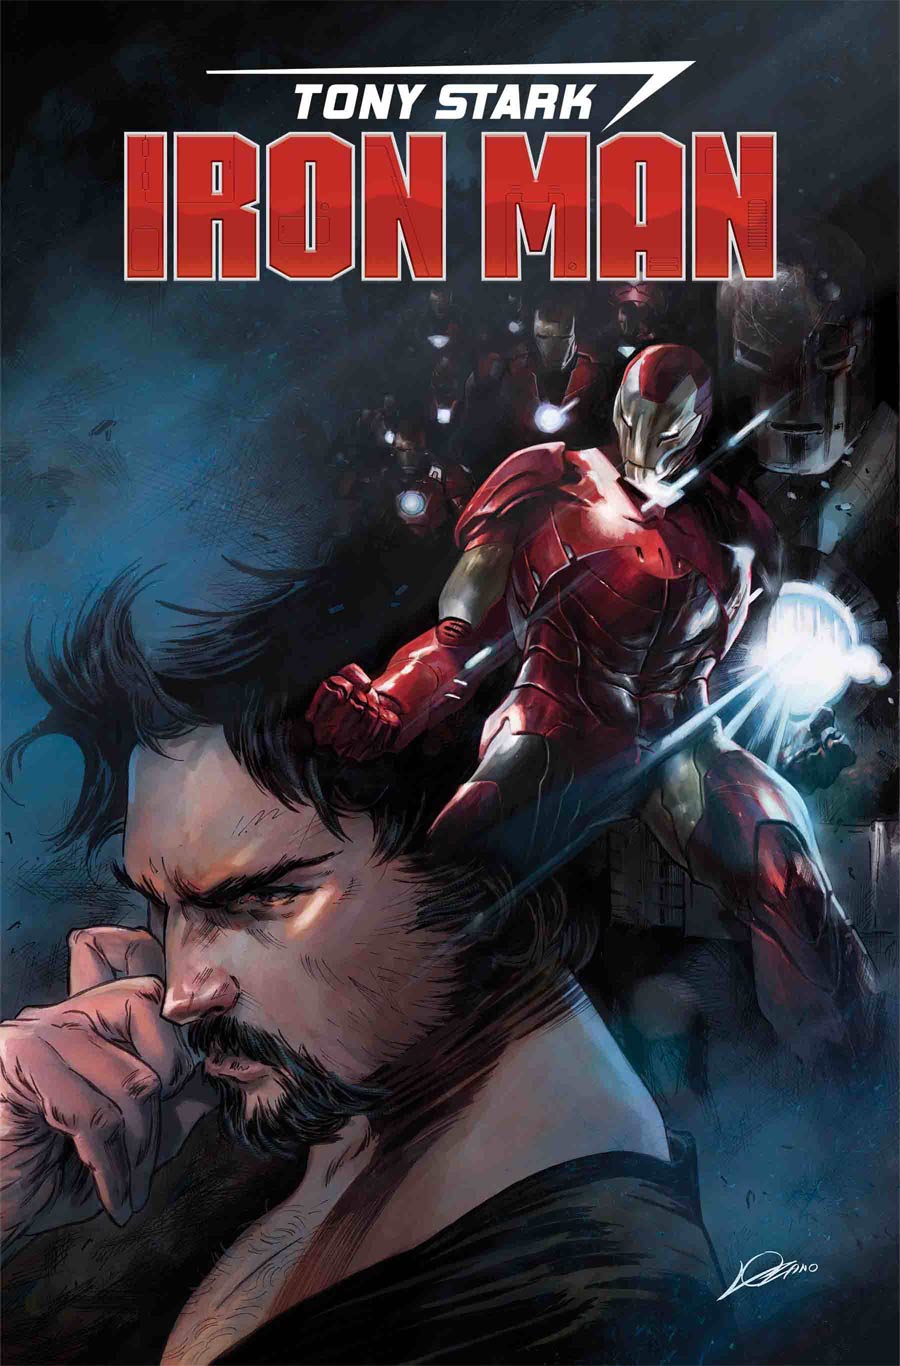 Tony Stark Iron Man #1 By Alexander Lozano Poster